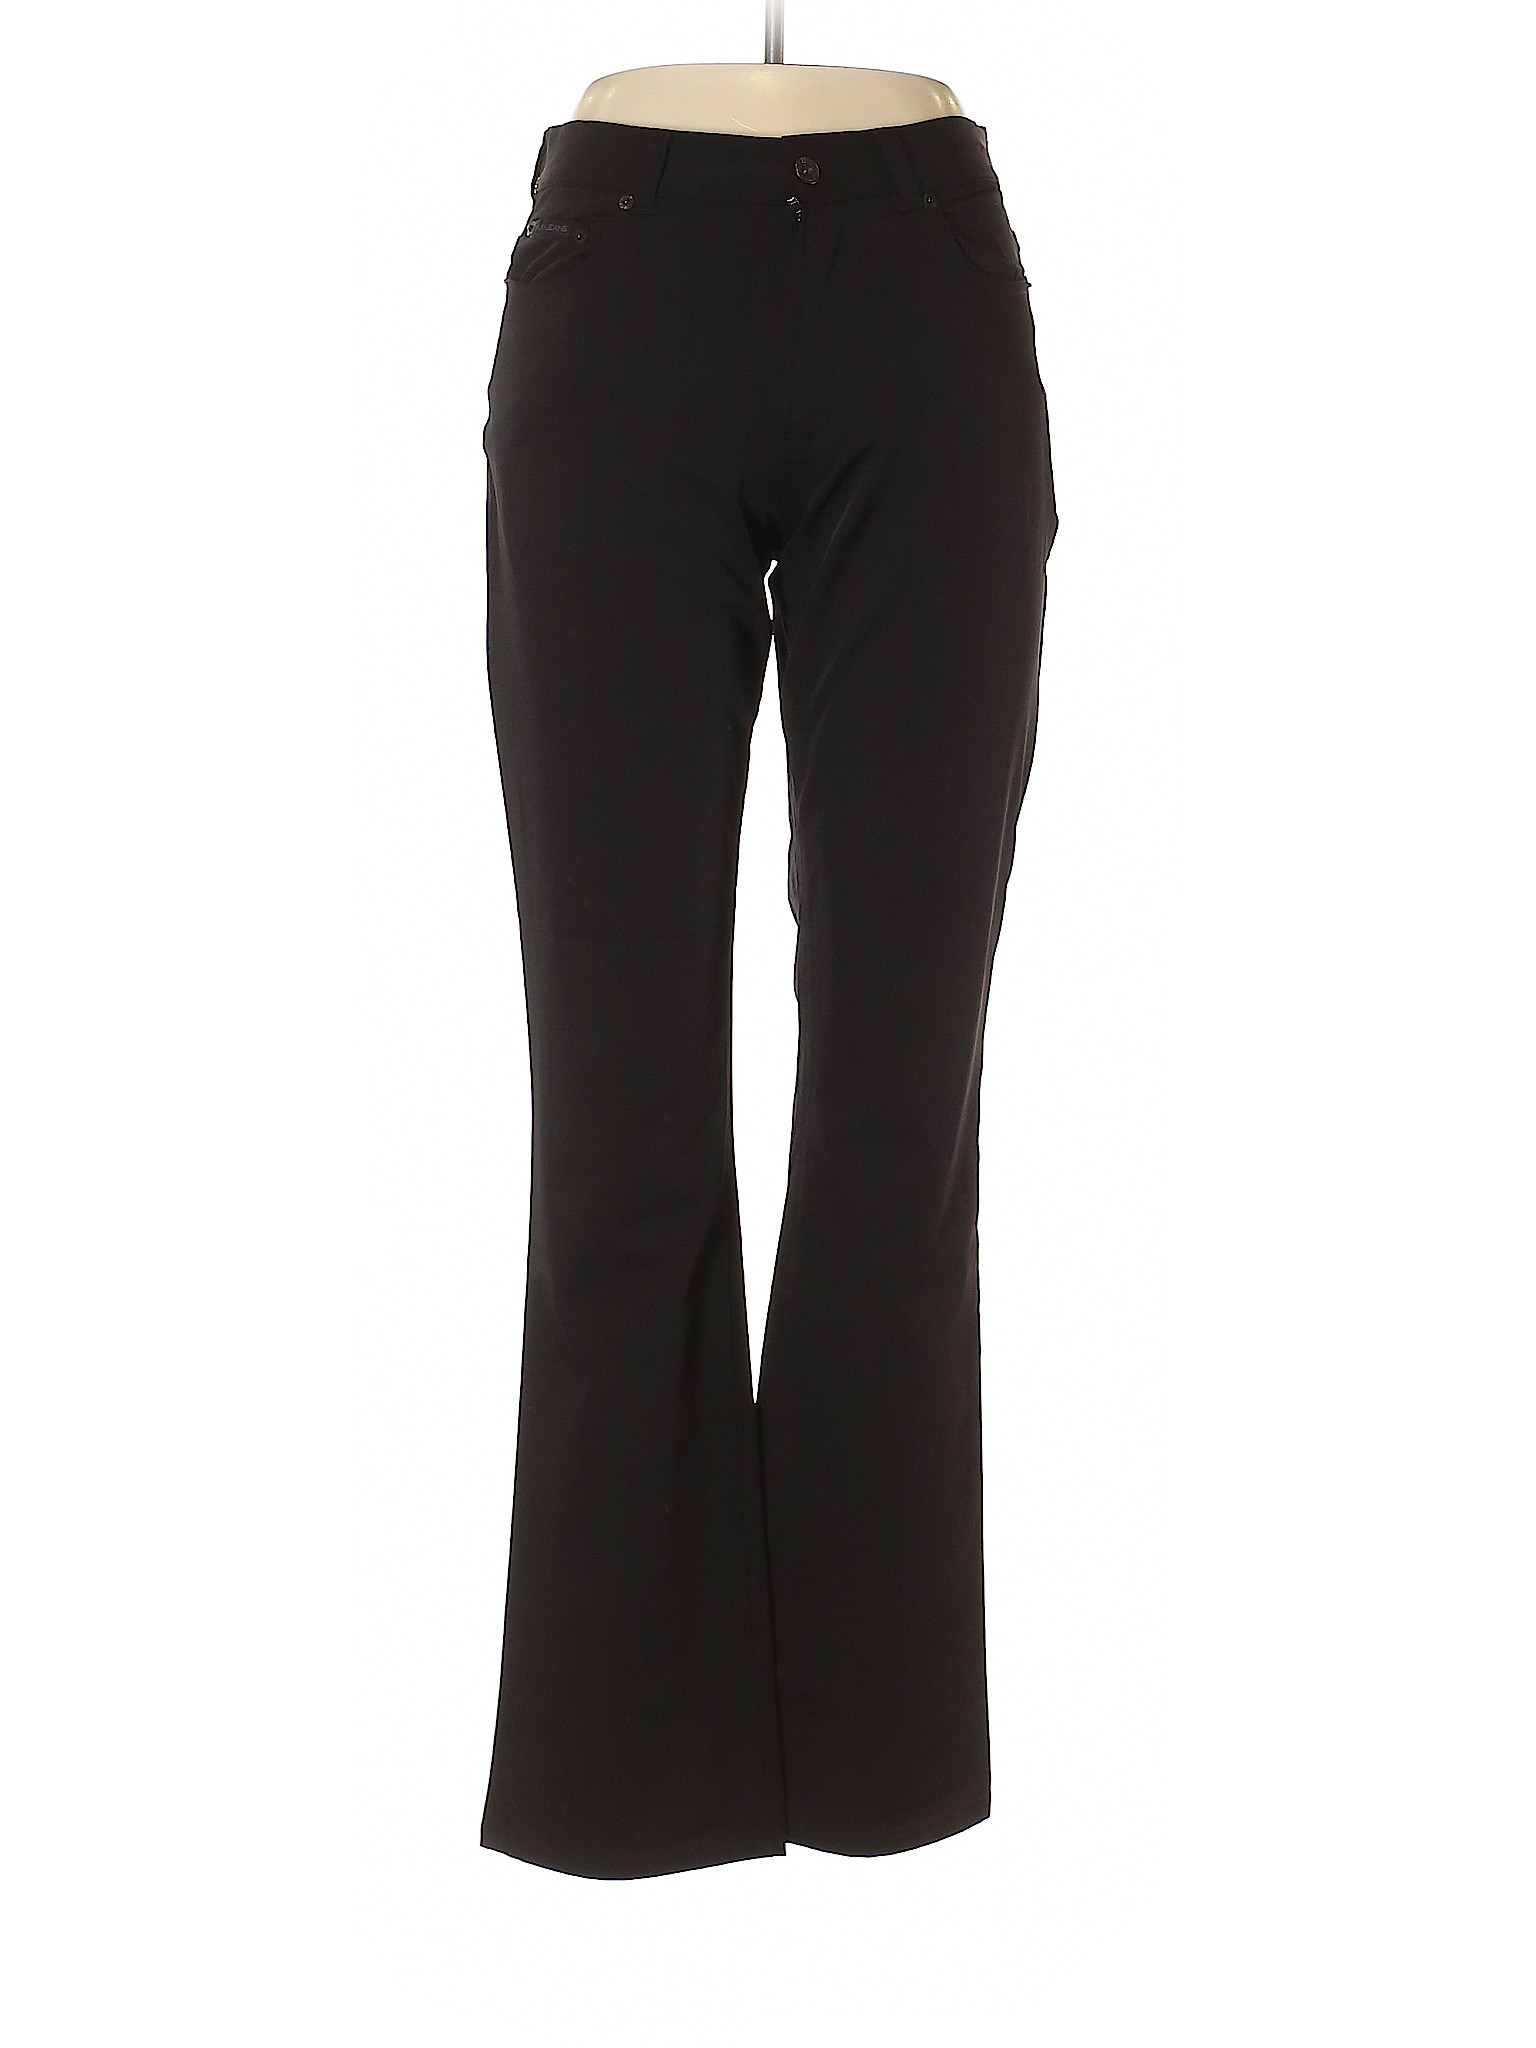 DKNY Jeans Women Black Casual Pants 10 | eBay